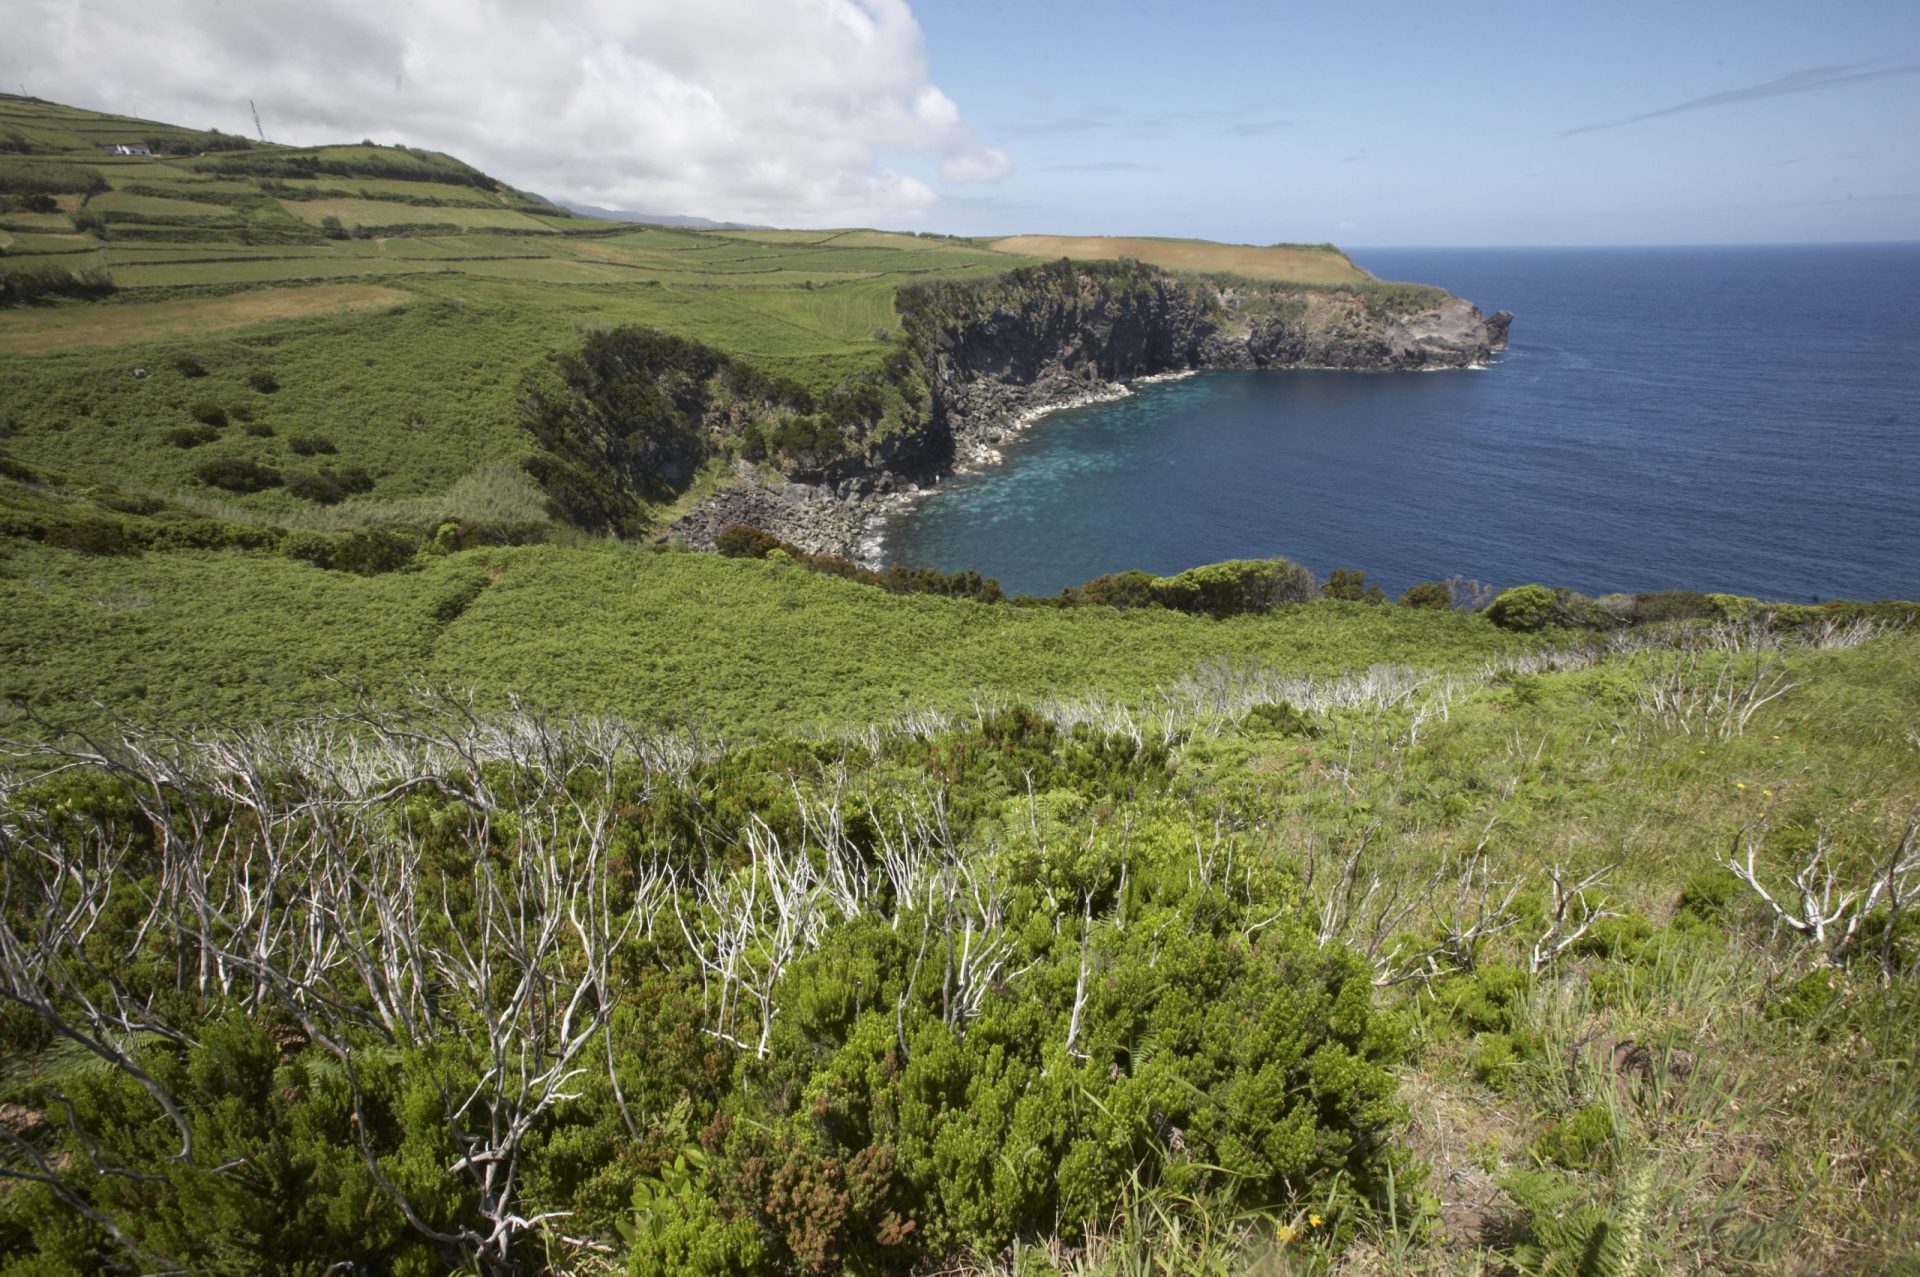 Sismo de magnitude 2,0 sentido na ilha Terceira